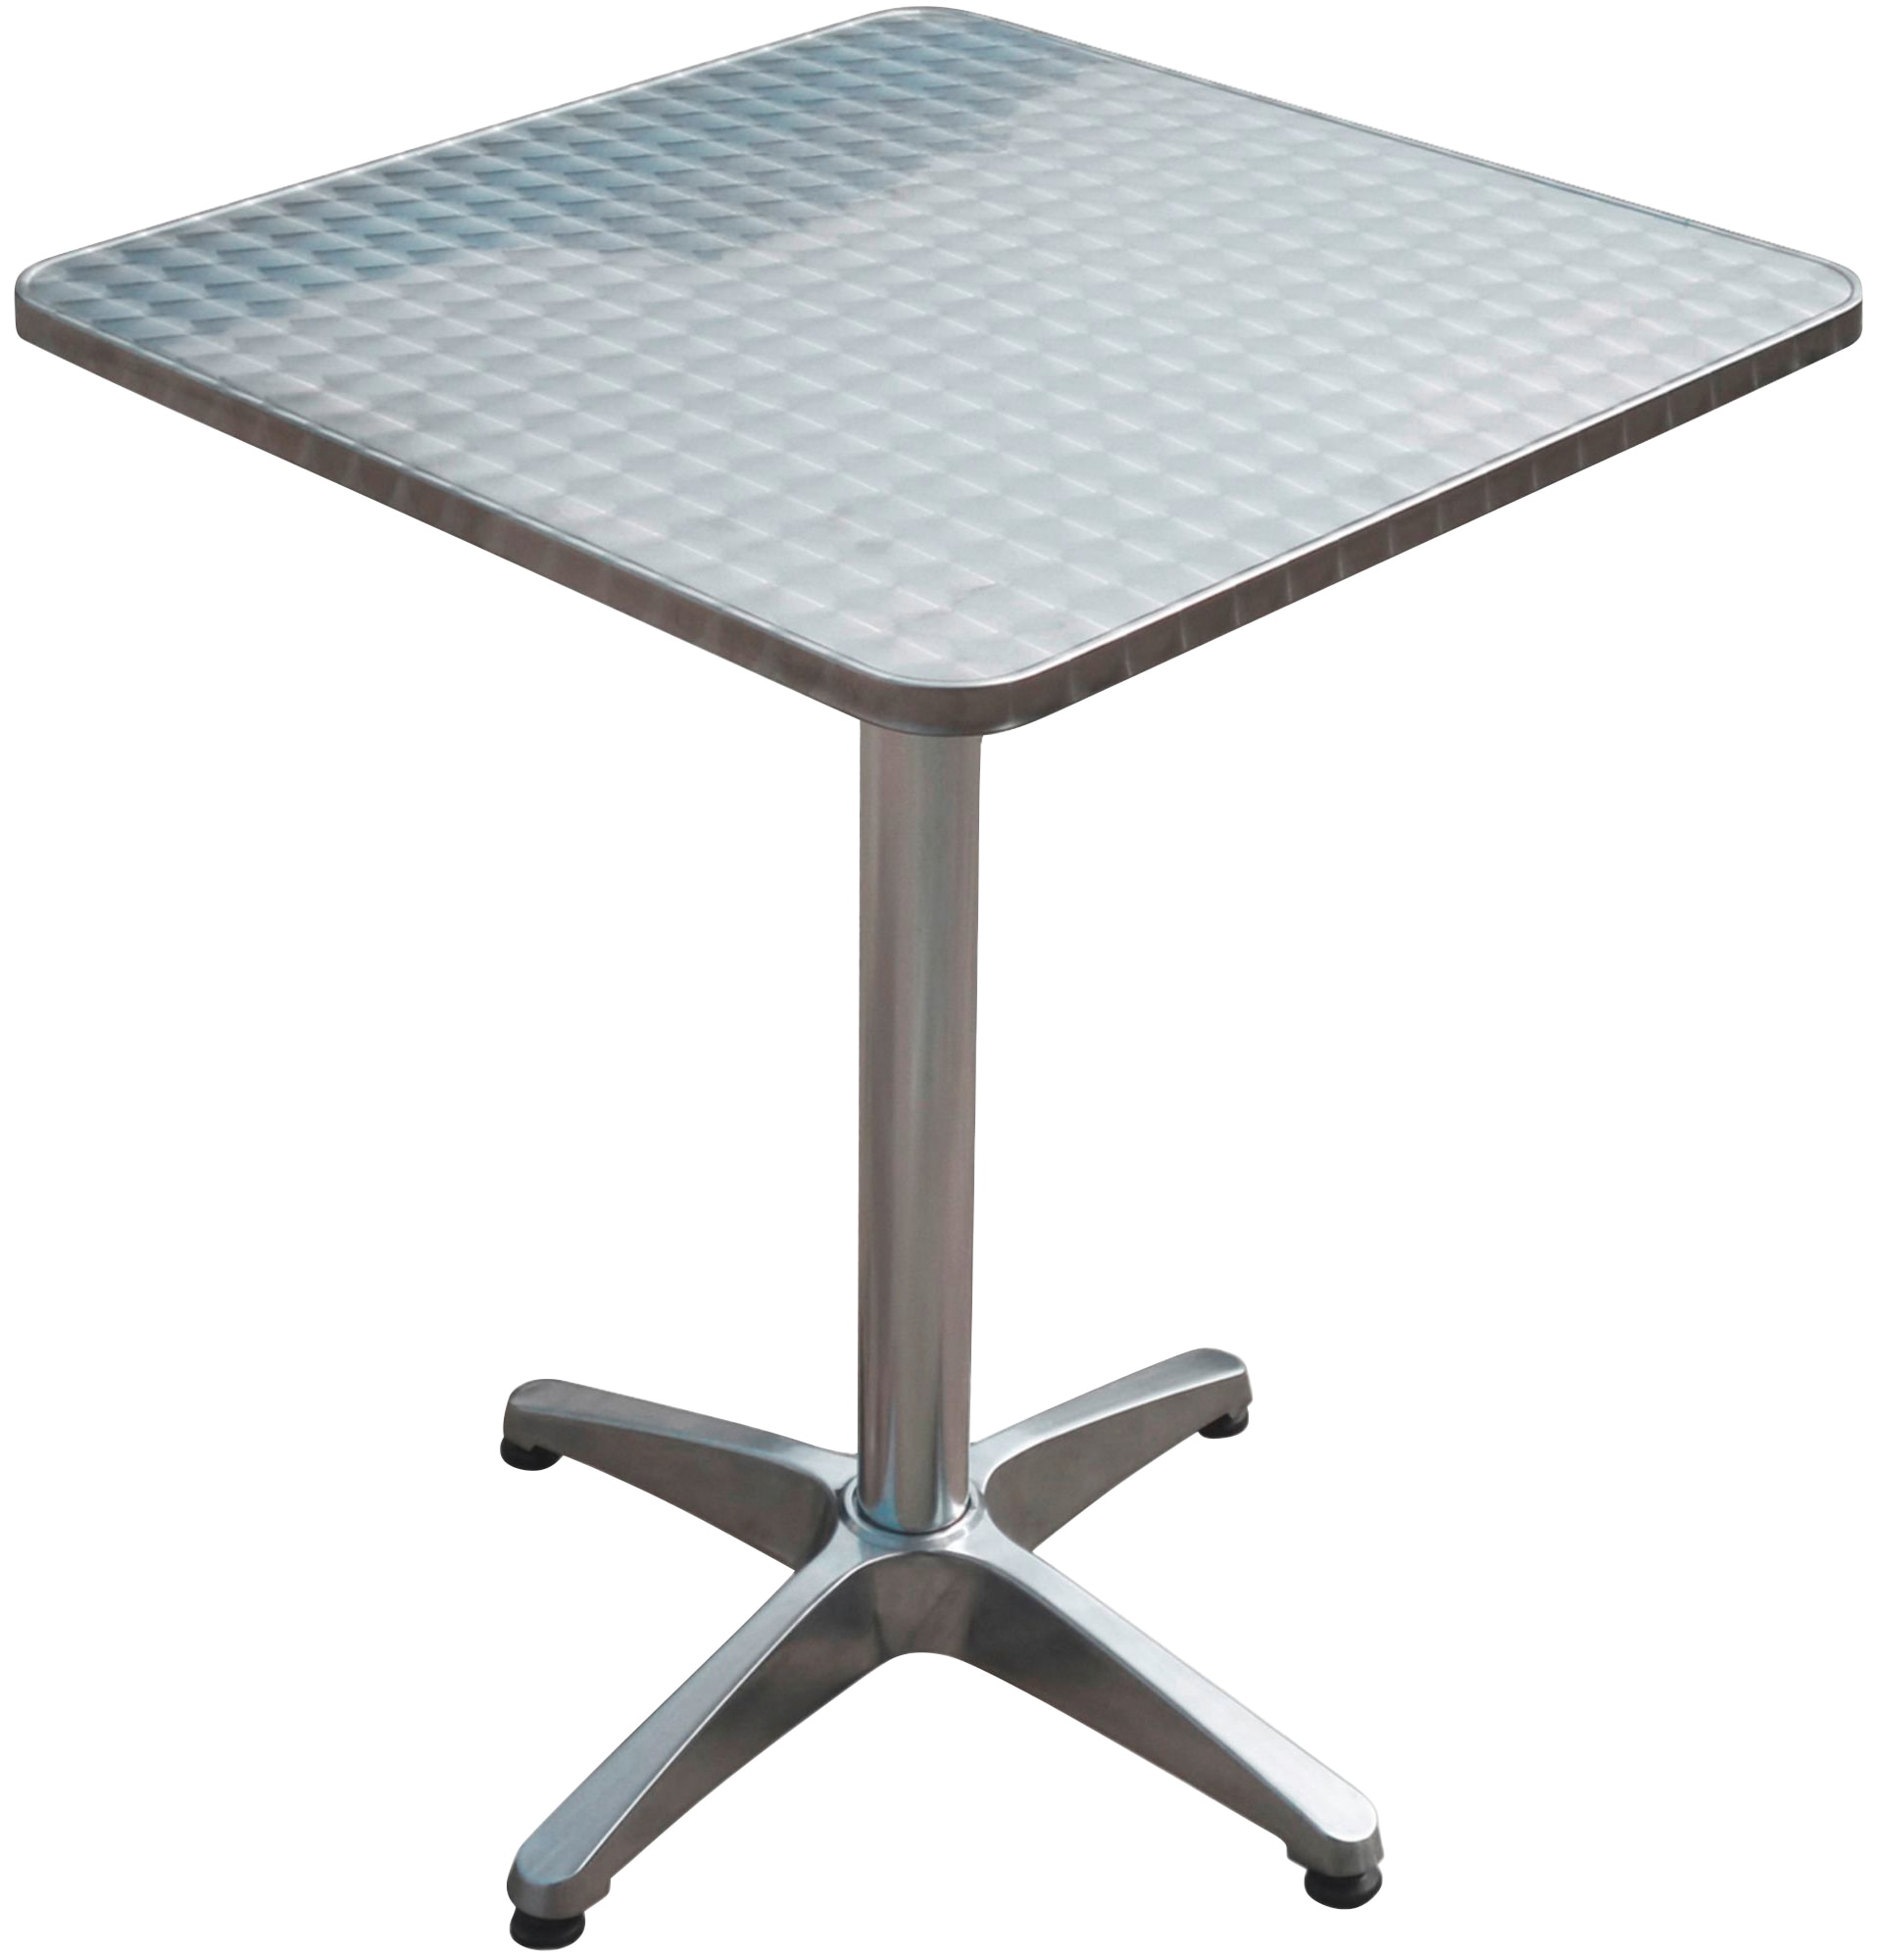 Gartentisch »Bistro Tisch, quadratisch, Alu-Gest«, mit hochwertigem Aluminium-Gestell